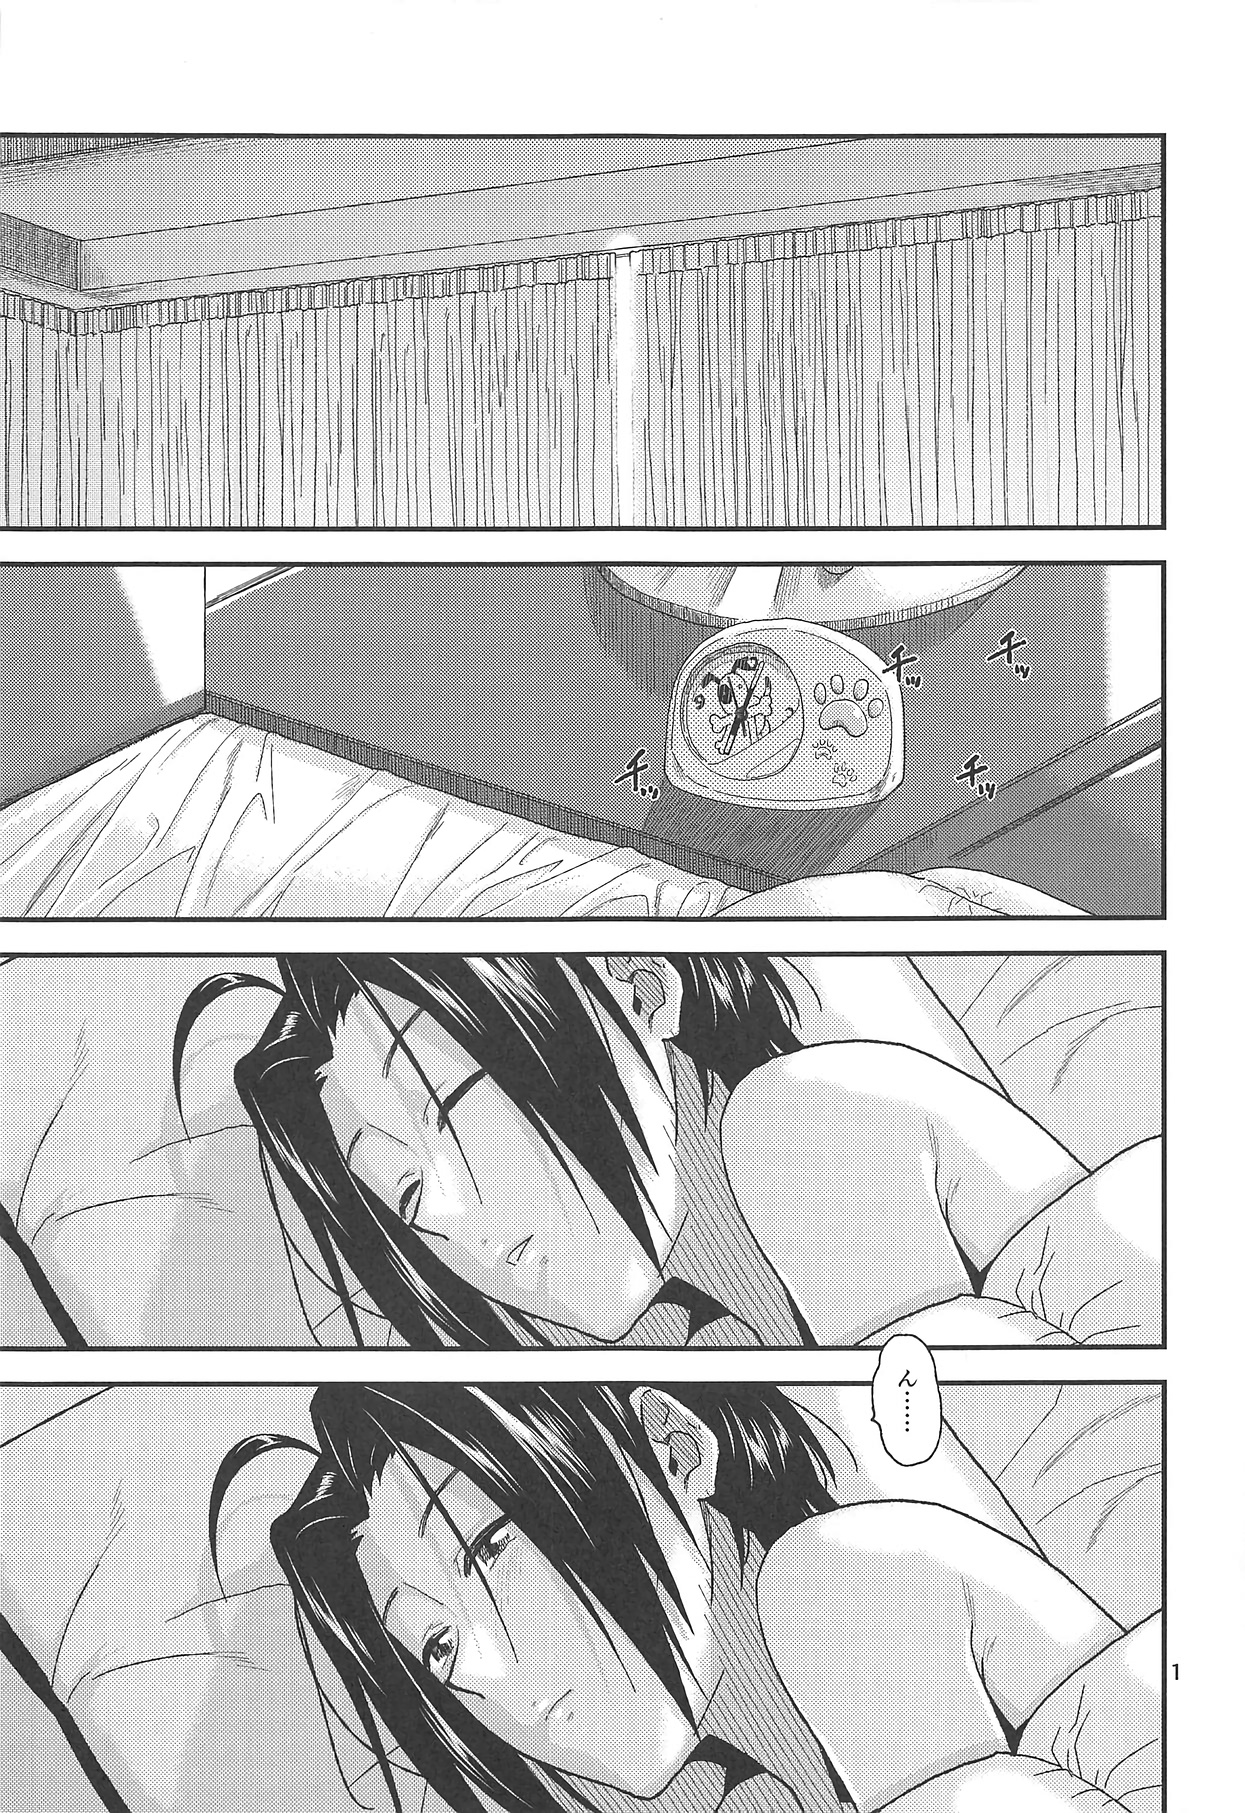 【ミリシタ】Pとあずさがベッド内でイチャラブえっちを繰り広げる♡の画像2枚目